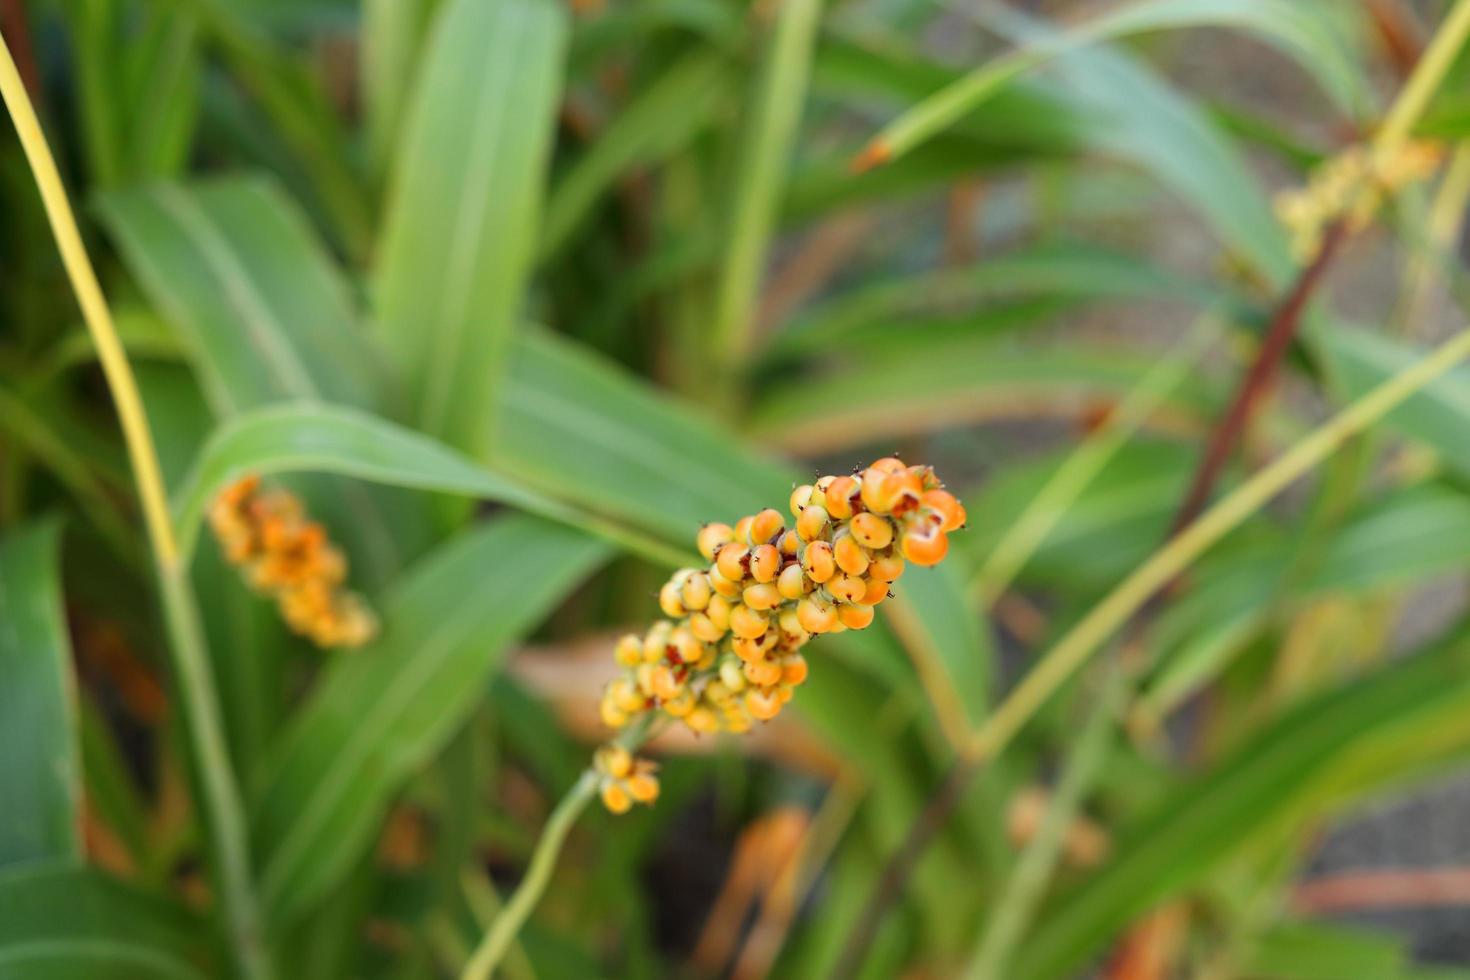 Helloranger reifer Samen von Hirse oder Sorghum auf Zweig und verschwommener grüner Blatthintergrund, thailand. foto